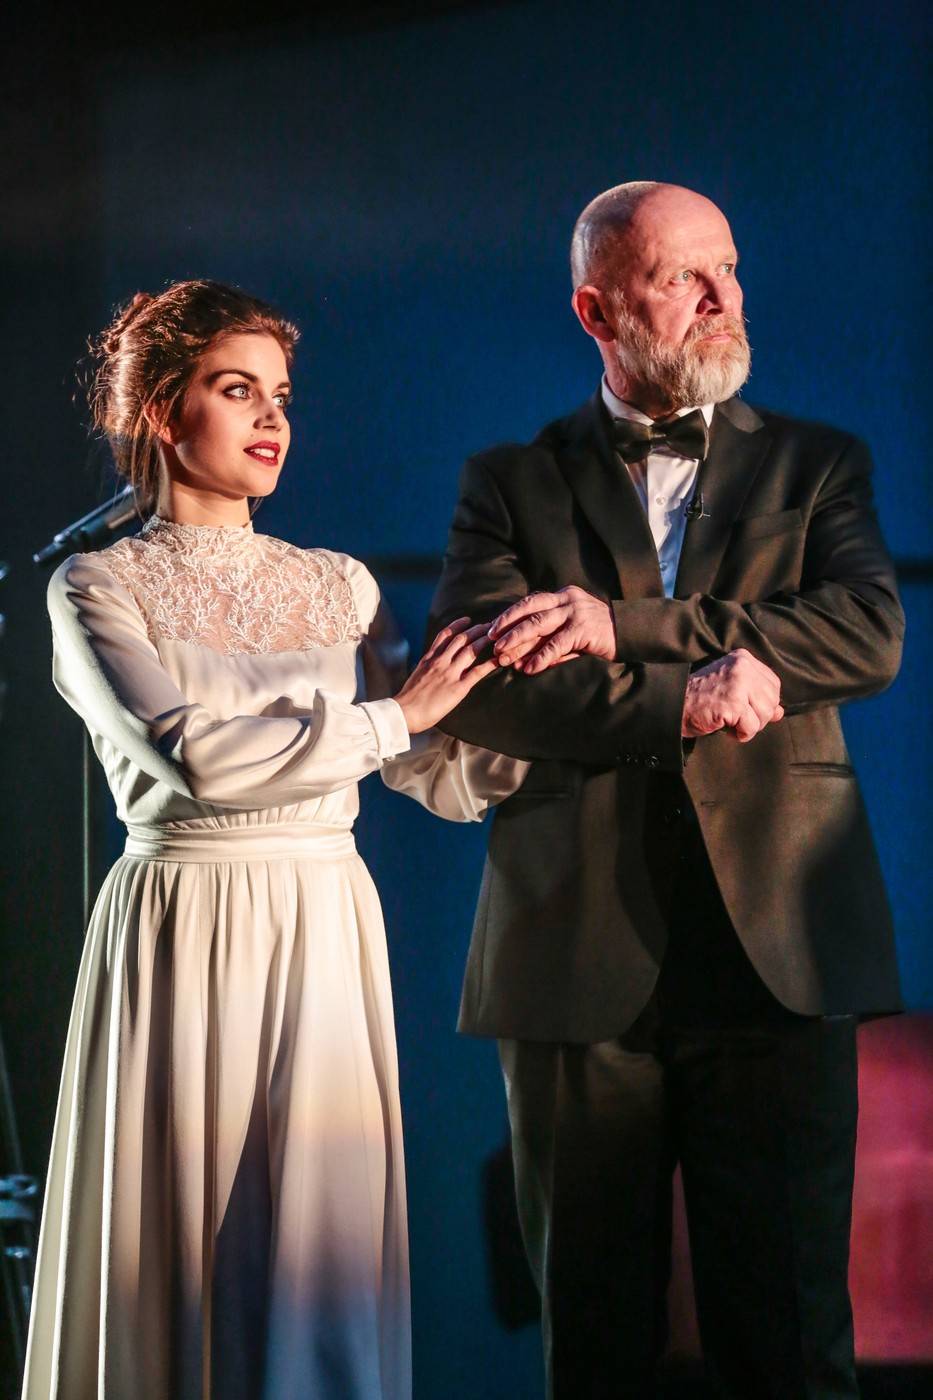 Horváth Lajos Ottó és Szász Júlia William Shakespeare A vihar című előadásán a Nemzeti színházban 2019 decemberében.